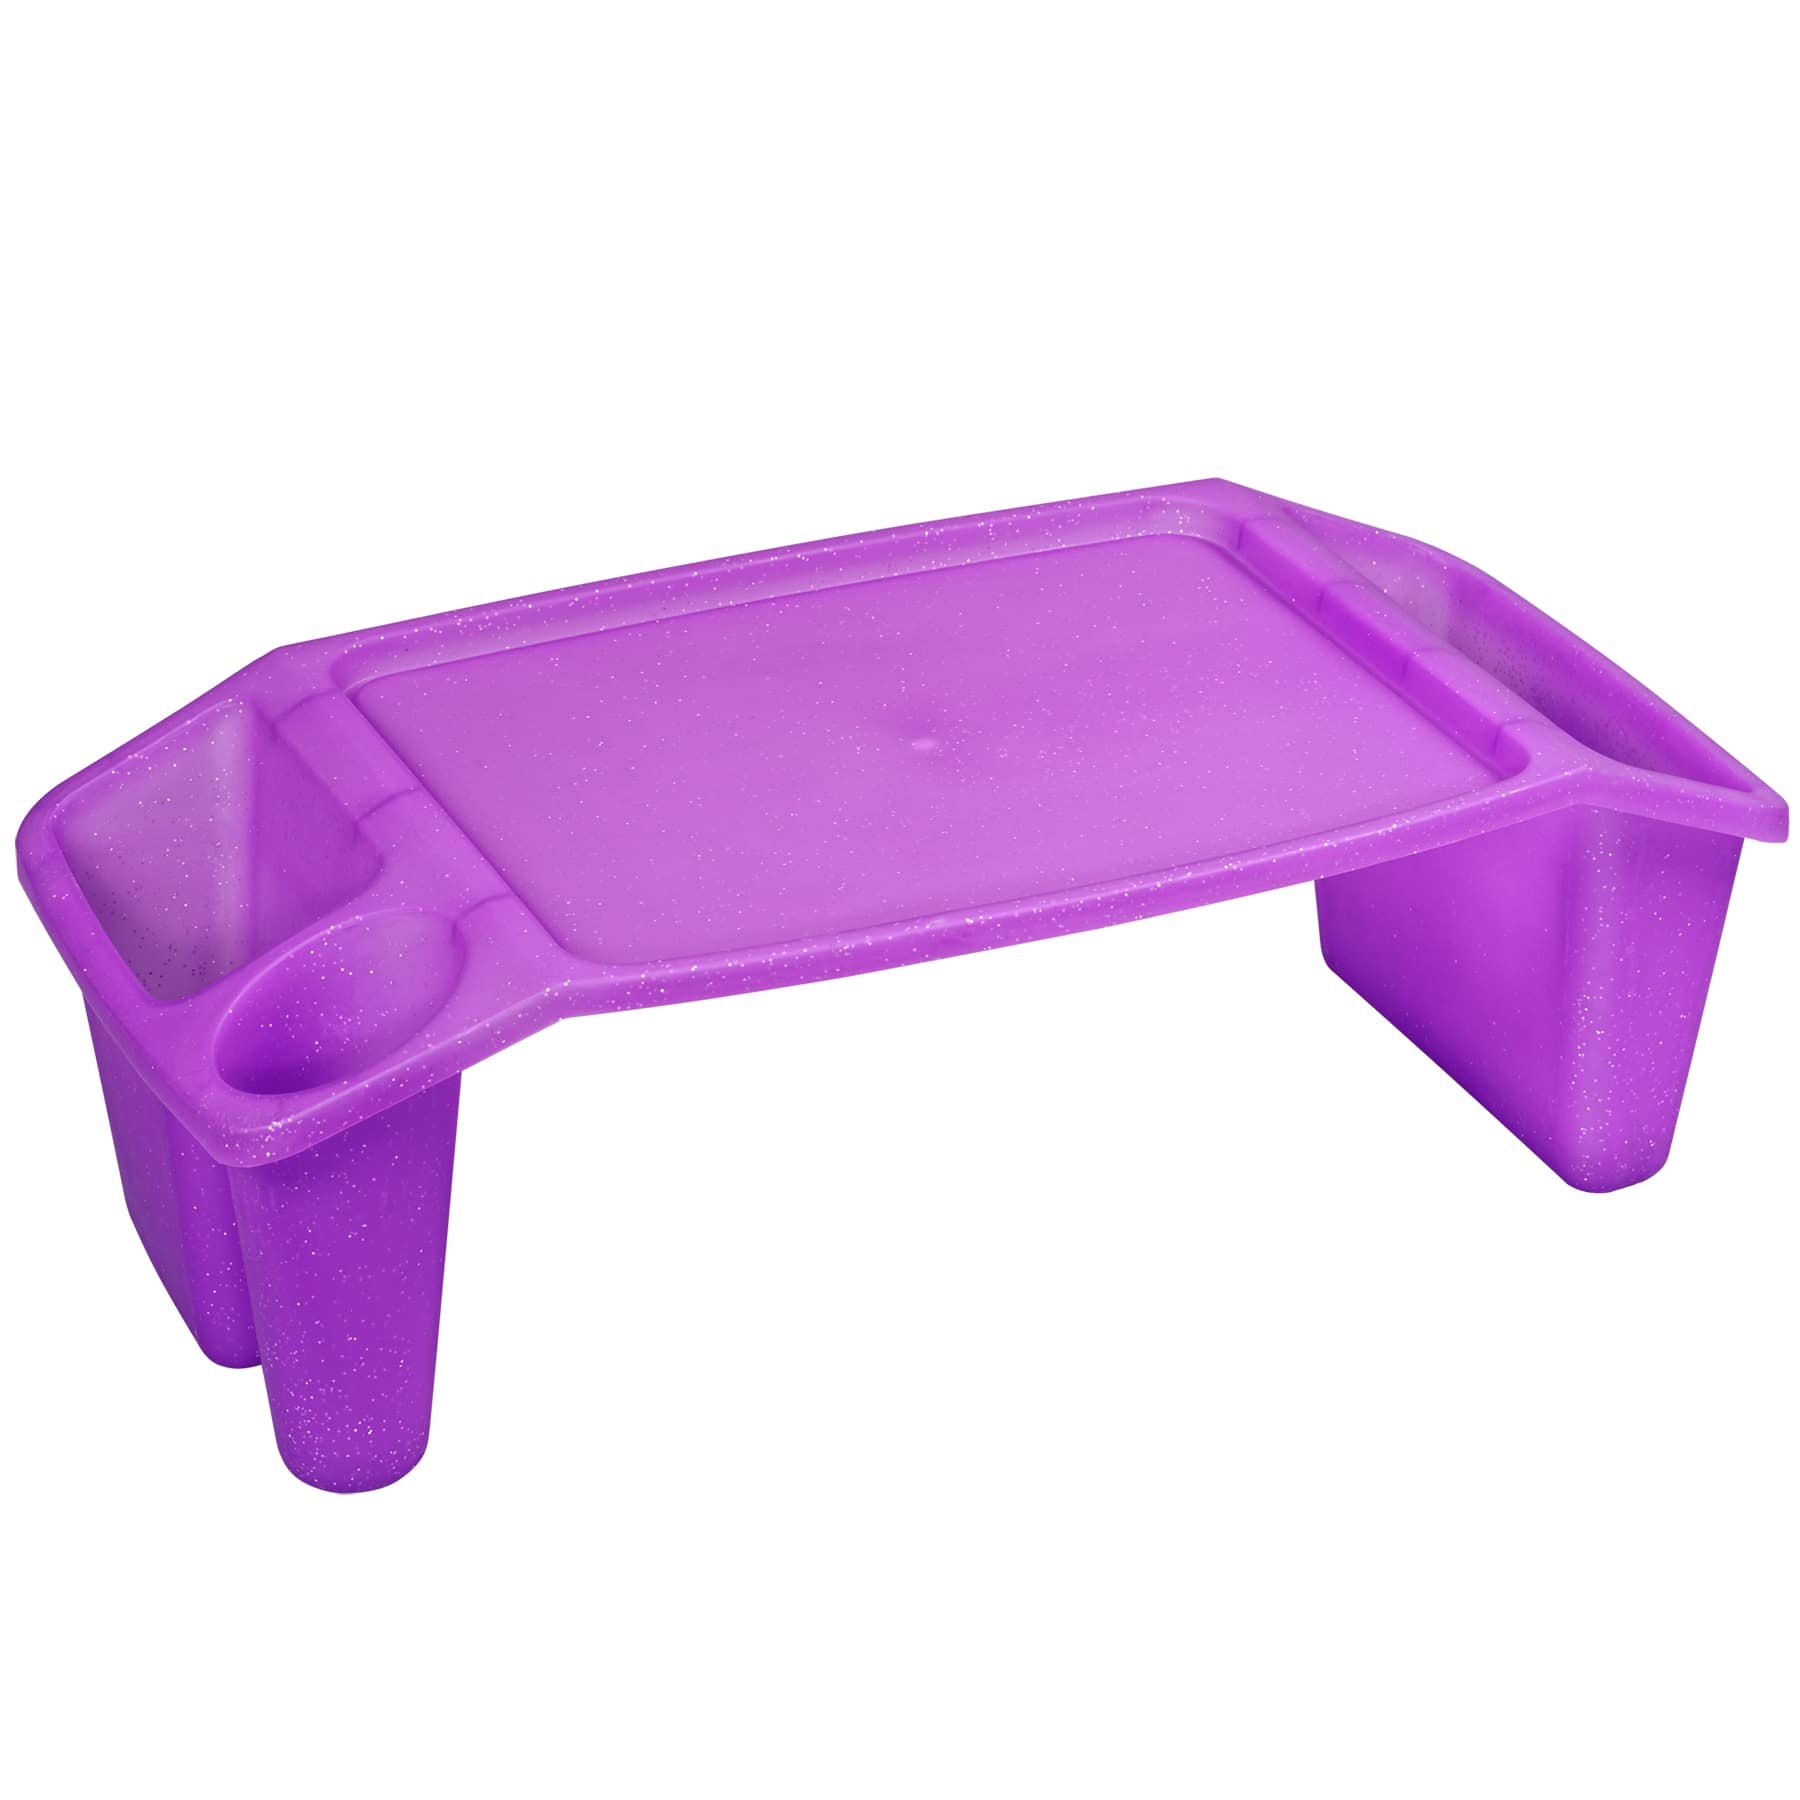 plastic desk for kids